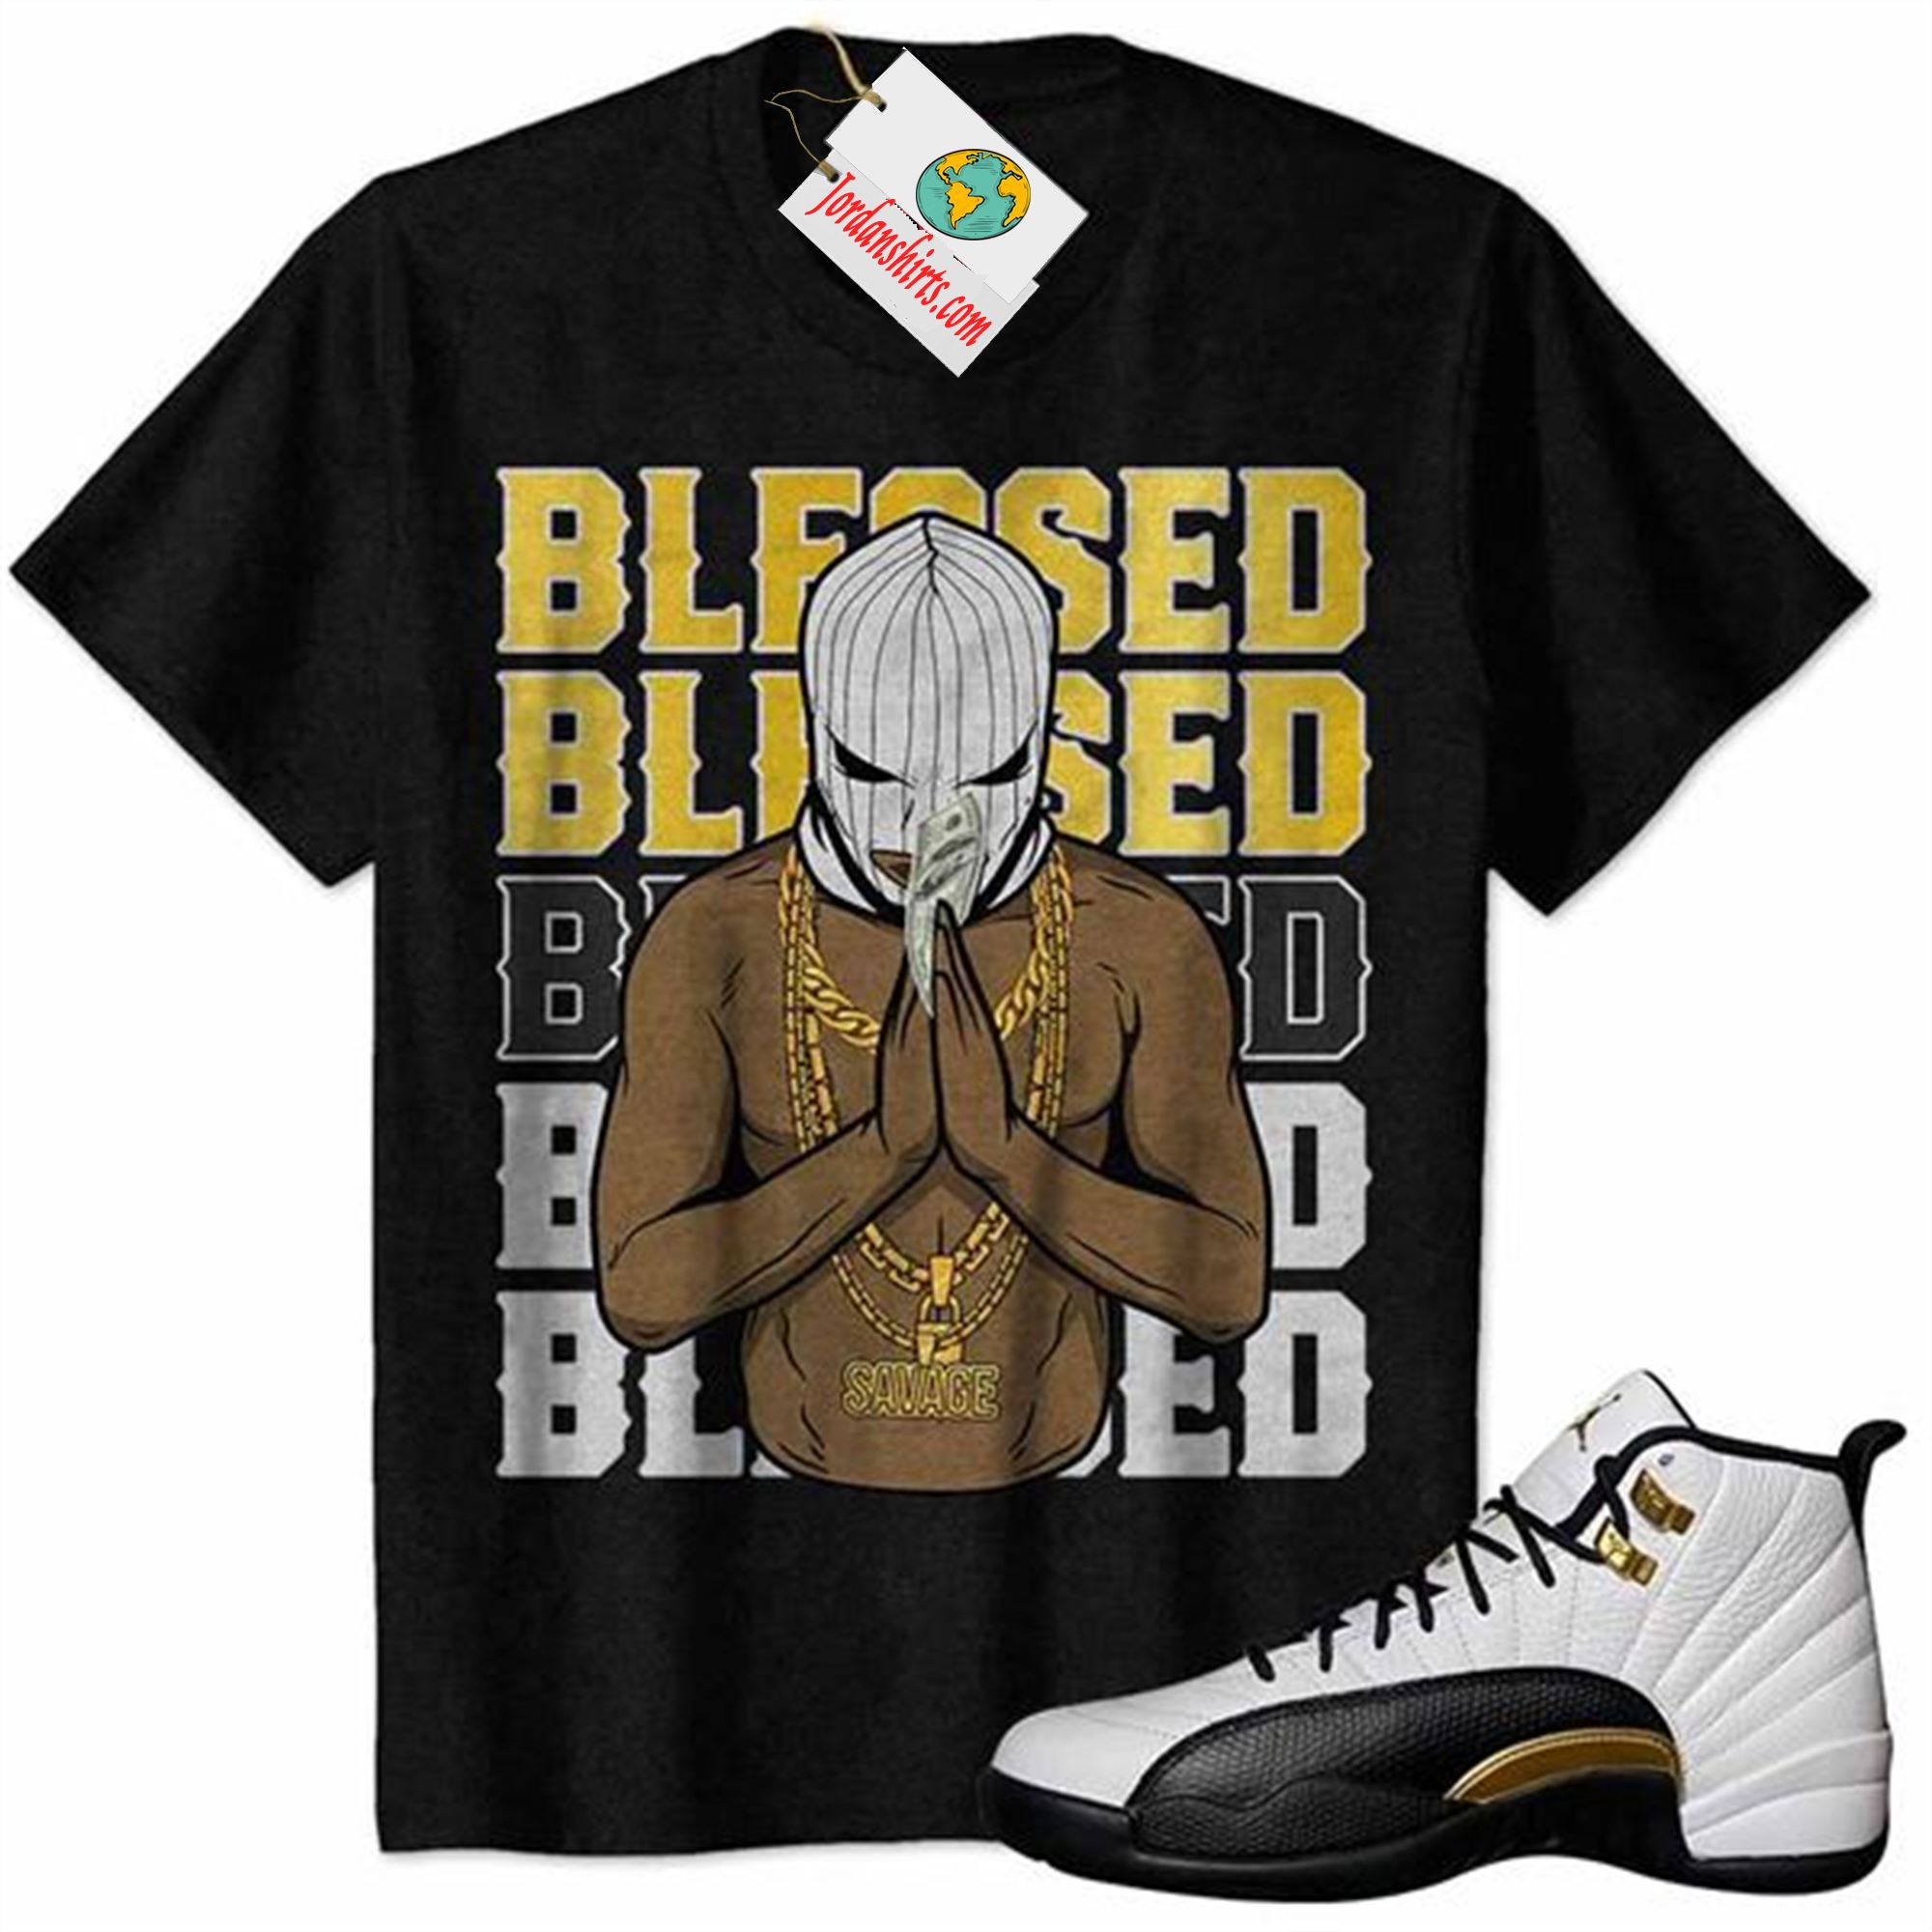 Jordan 12 Shirt, Gangster Ski Mask Man Savage Blessed Black Air Jordan 12 Royalty 12s Size Up To 5xl